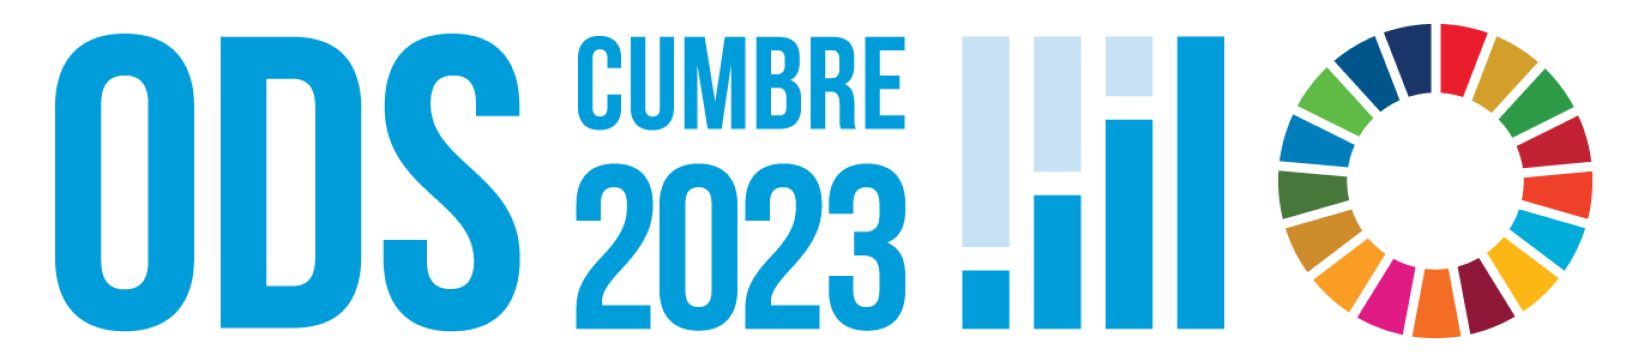 Logo de la cumbre de los ODS 2023